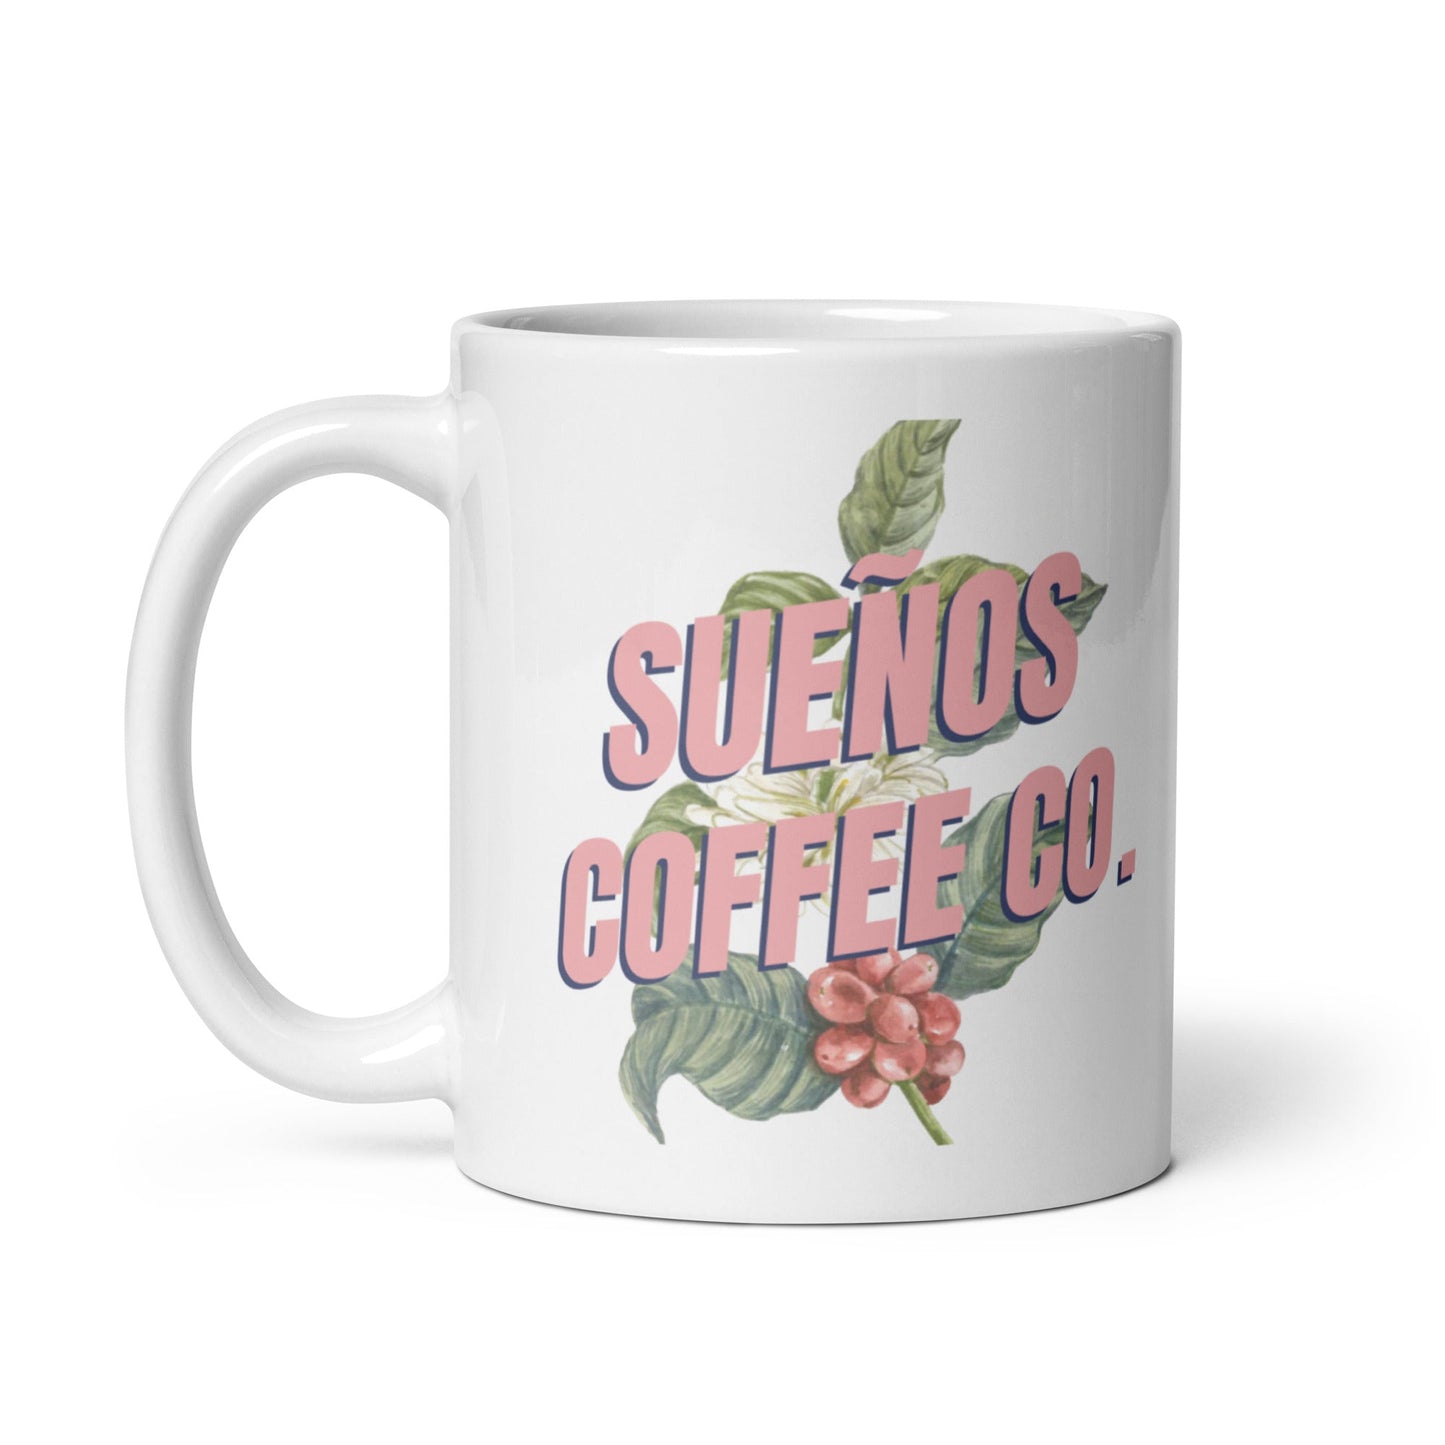 Sueños Coffee Co. Logo Mug - Sueños Coffee Co. Sueños Coffee Co. Home Decor